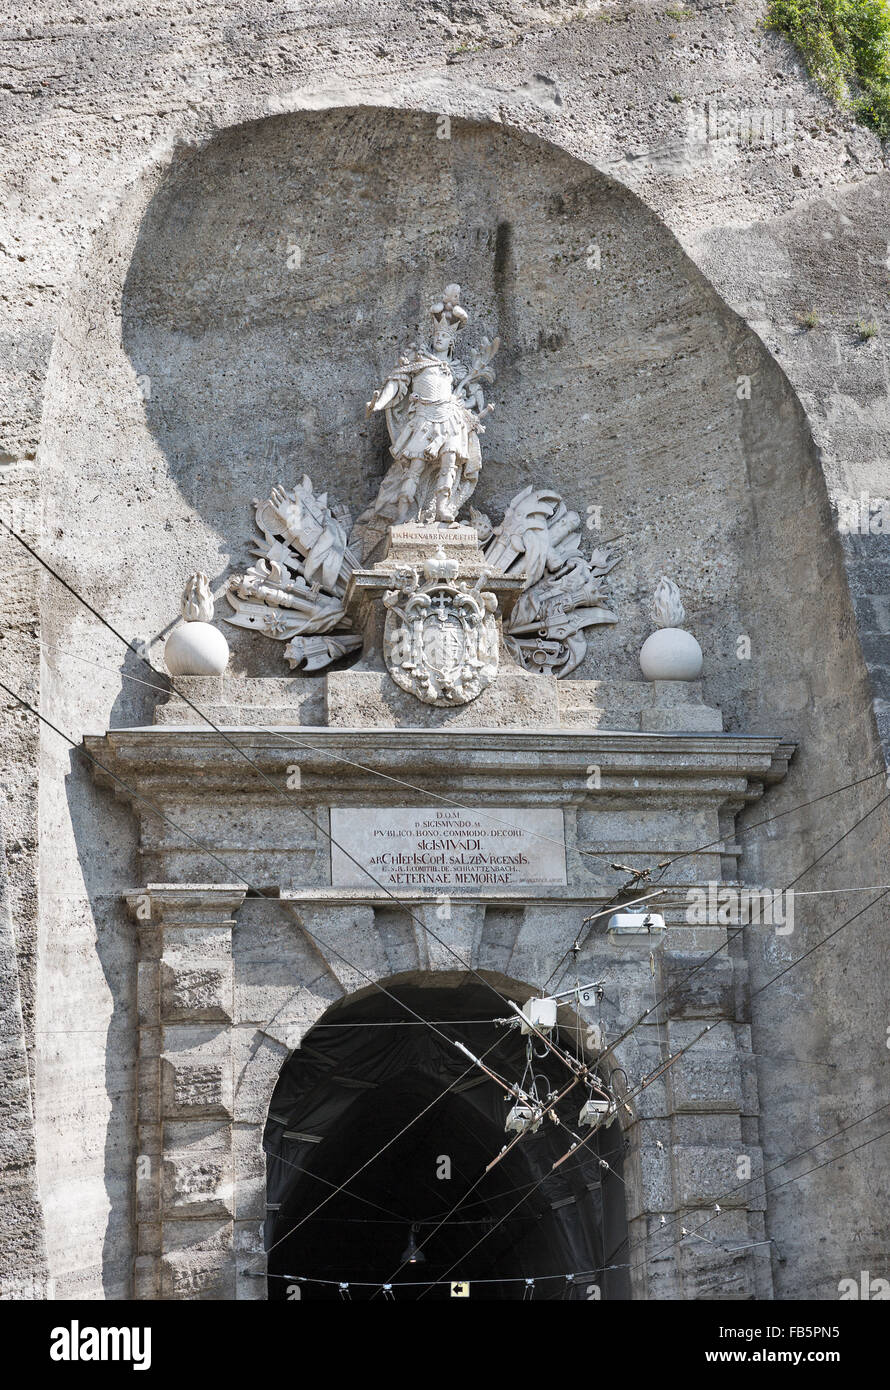 Ornements sur la porte historique artistique Neutor à tunnel à Salzbourg, en Autriche. Siegmundstor ou tunnel Neutor a été construit entre 1764 Banque D'Images